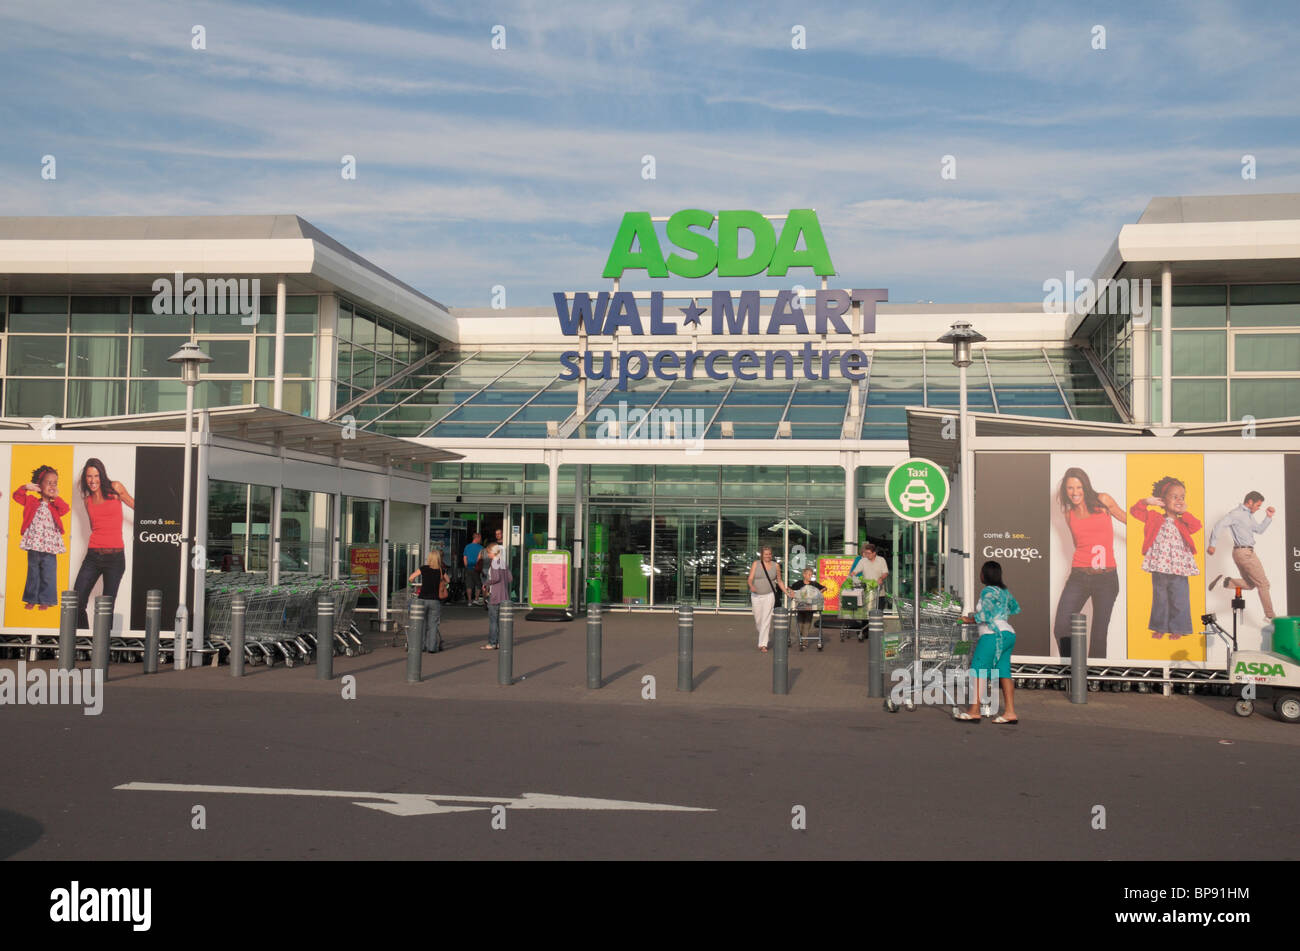 La Asda & Wallmart loghi e segni sopra l'entrata di un negozio nelle Midlands, Regno Unito. Foto Stock